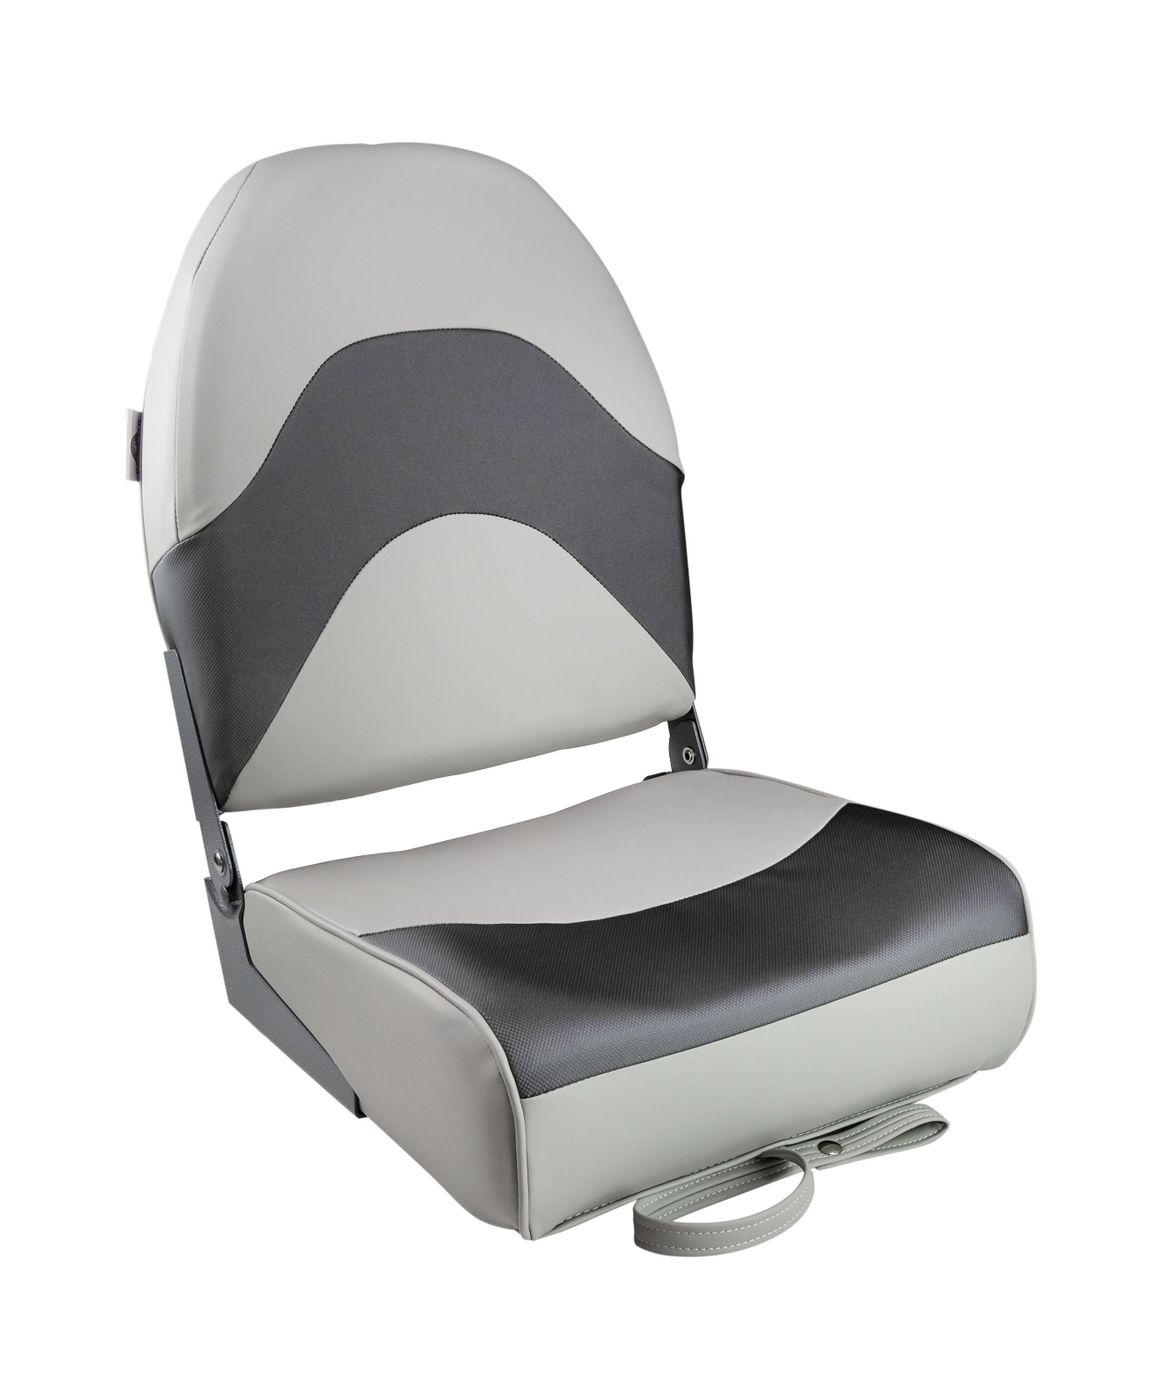 Кресло складное мягкое PREMIUM WAVE, цвет серый/черный 1062034 сиденье мягкое bass boat seat серый черный синий 75132gcb